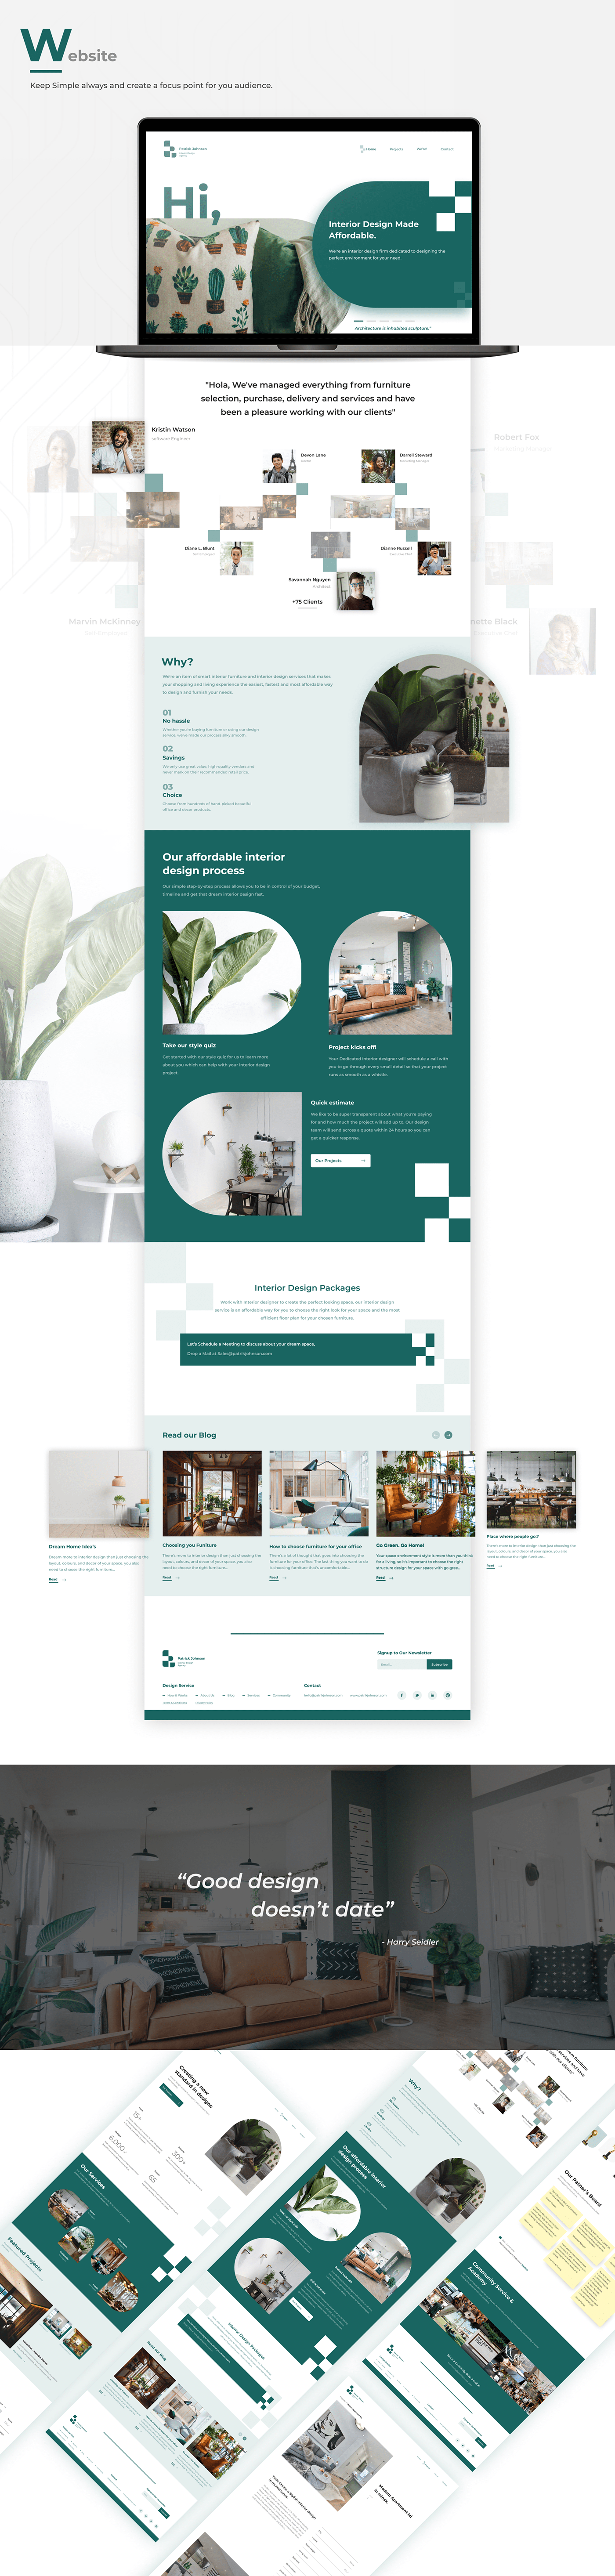 adaptive design branding  design graphic design  interior design  product design  UI/UX Website